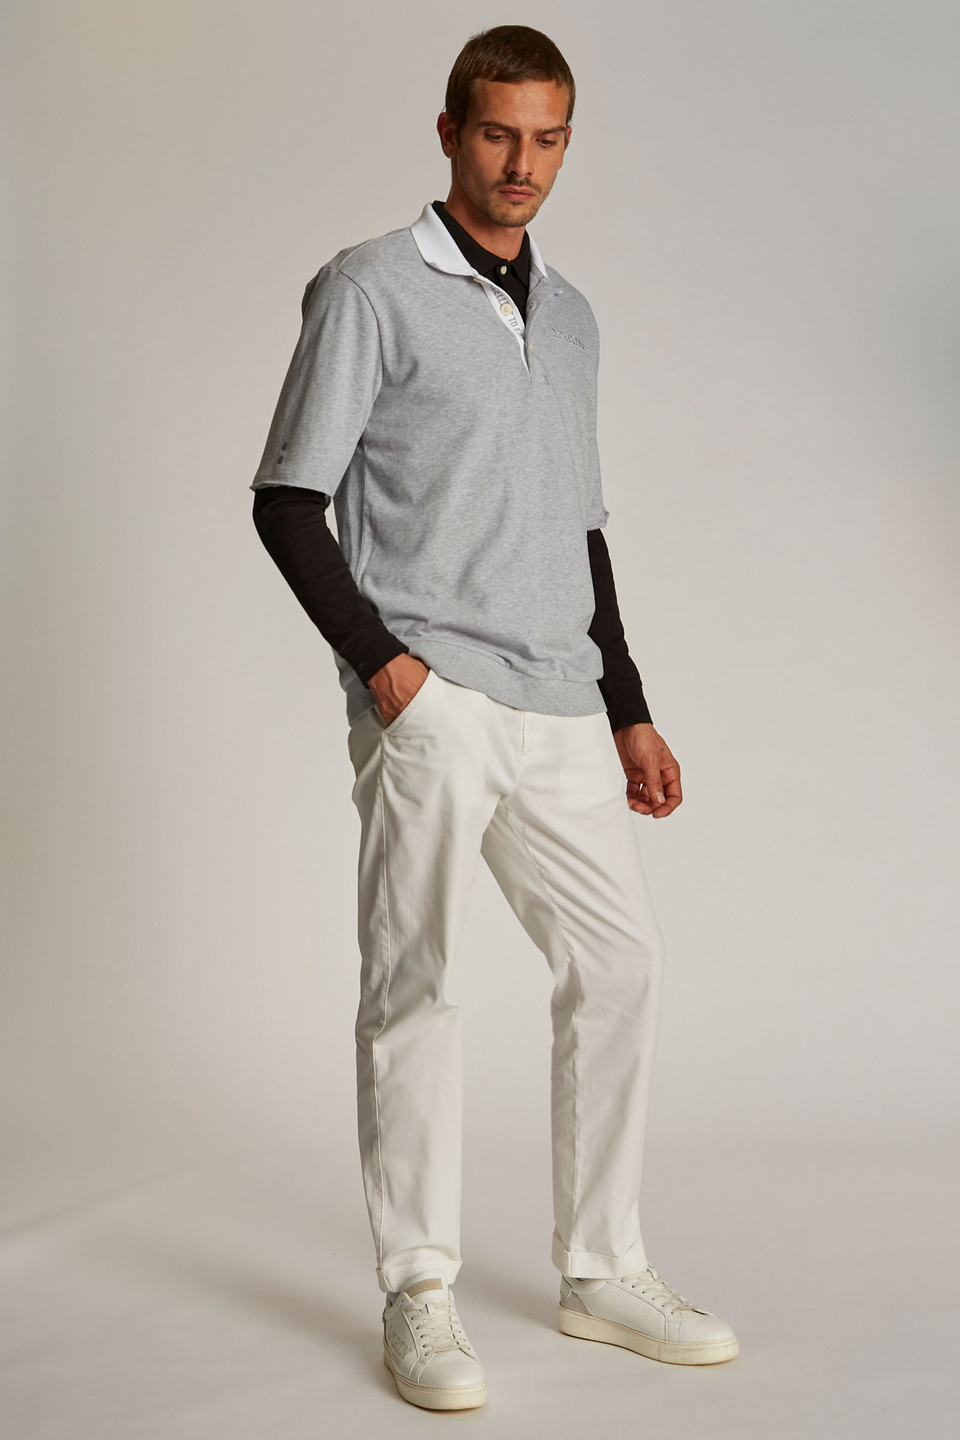 Herren-Poloshirt mit kurzem Arm und einem Kragen in Kontrastoptik, oversized Modell | La Martina - Official Online Shop